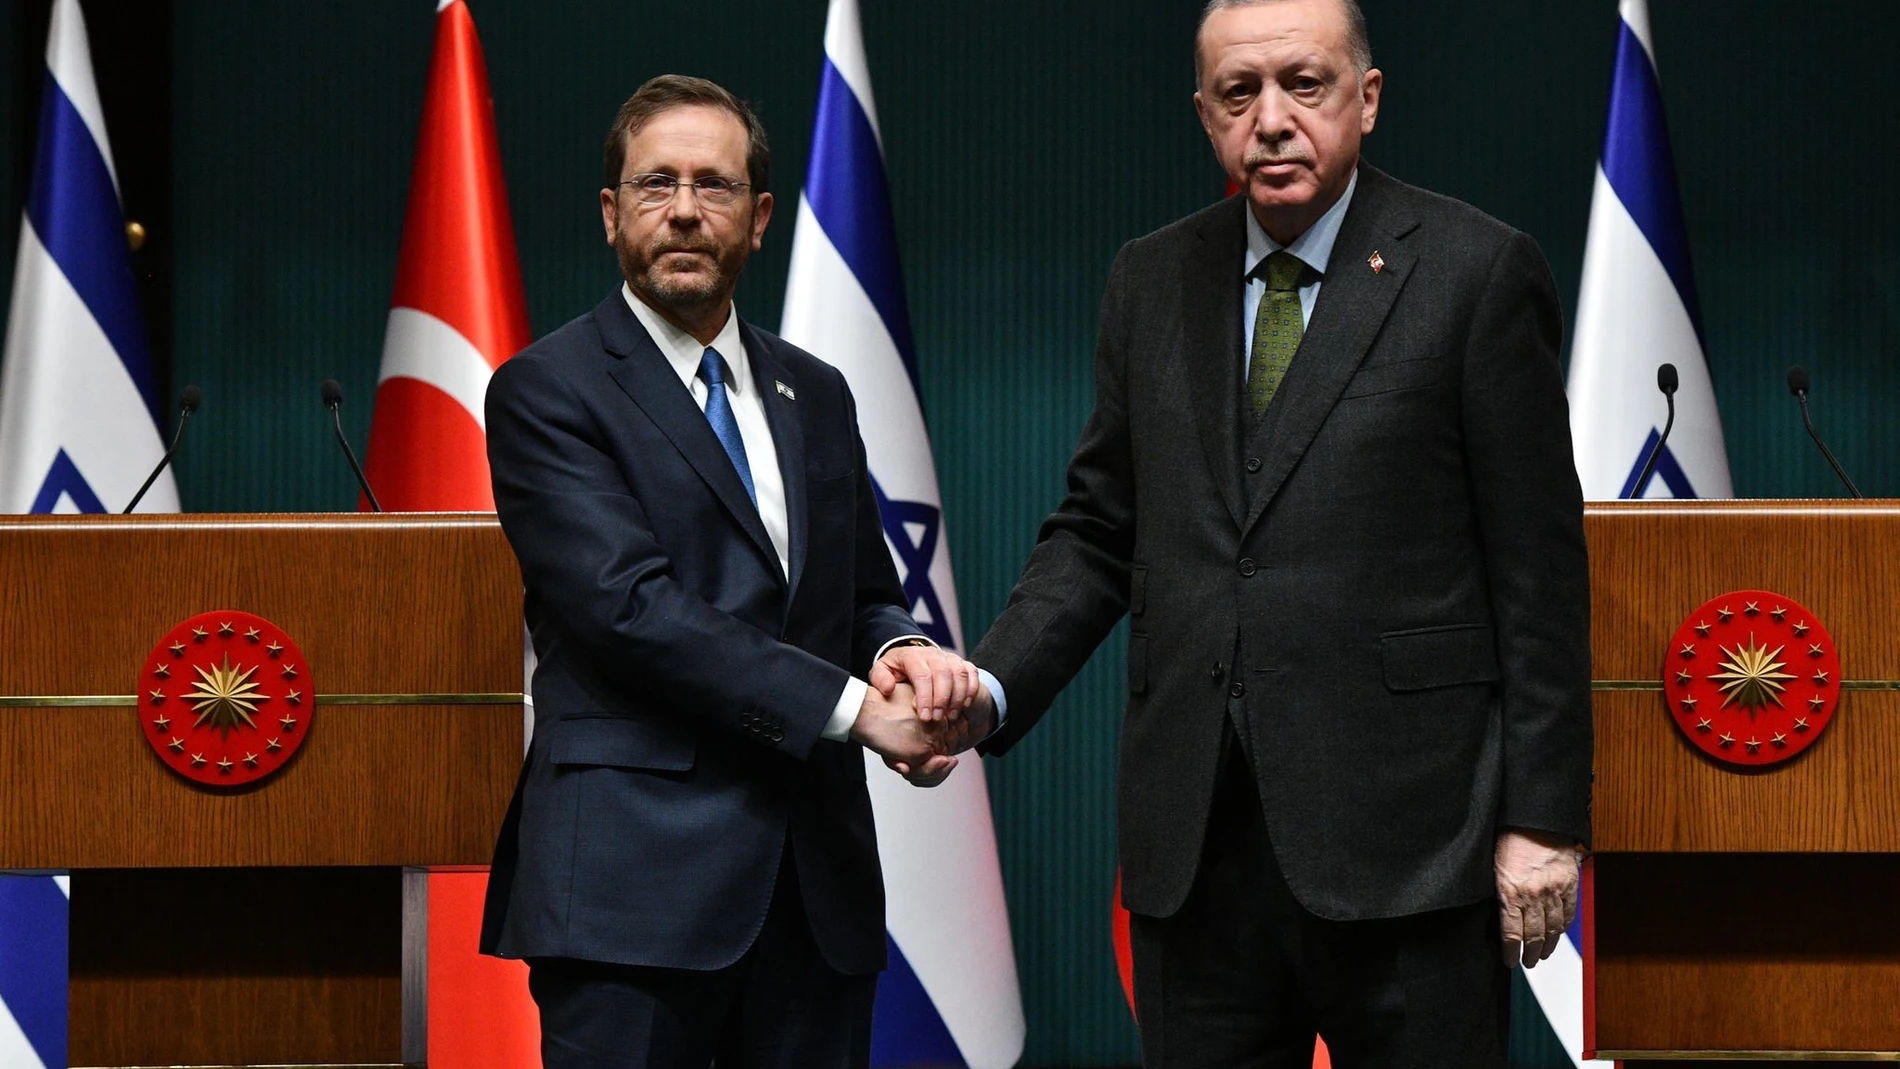 El presidente turco Recep Tayyip Erdogan estrecha la mano del presidente israelí Isaac Herzog durante una rueda de prensa tras su reunión en el Complejo Presidencial de Ankara